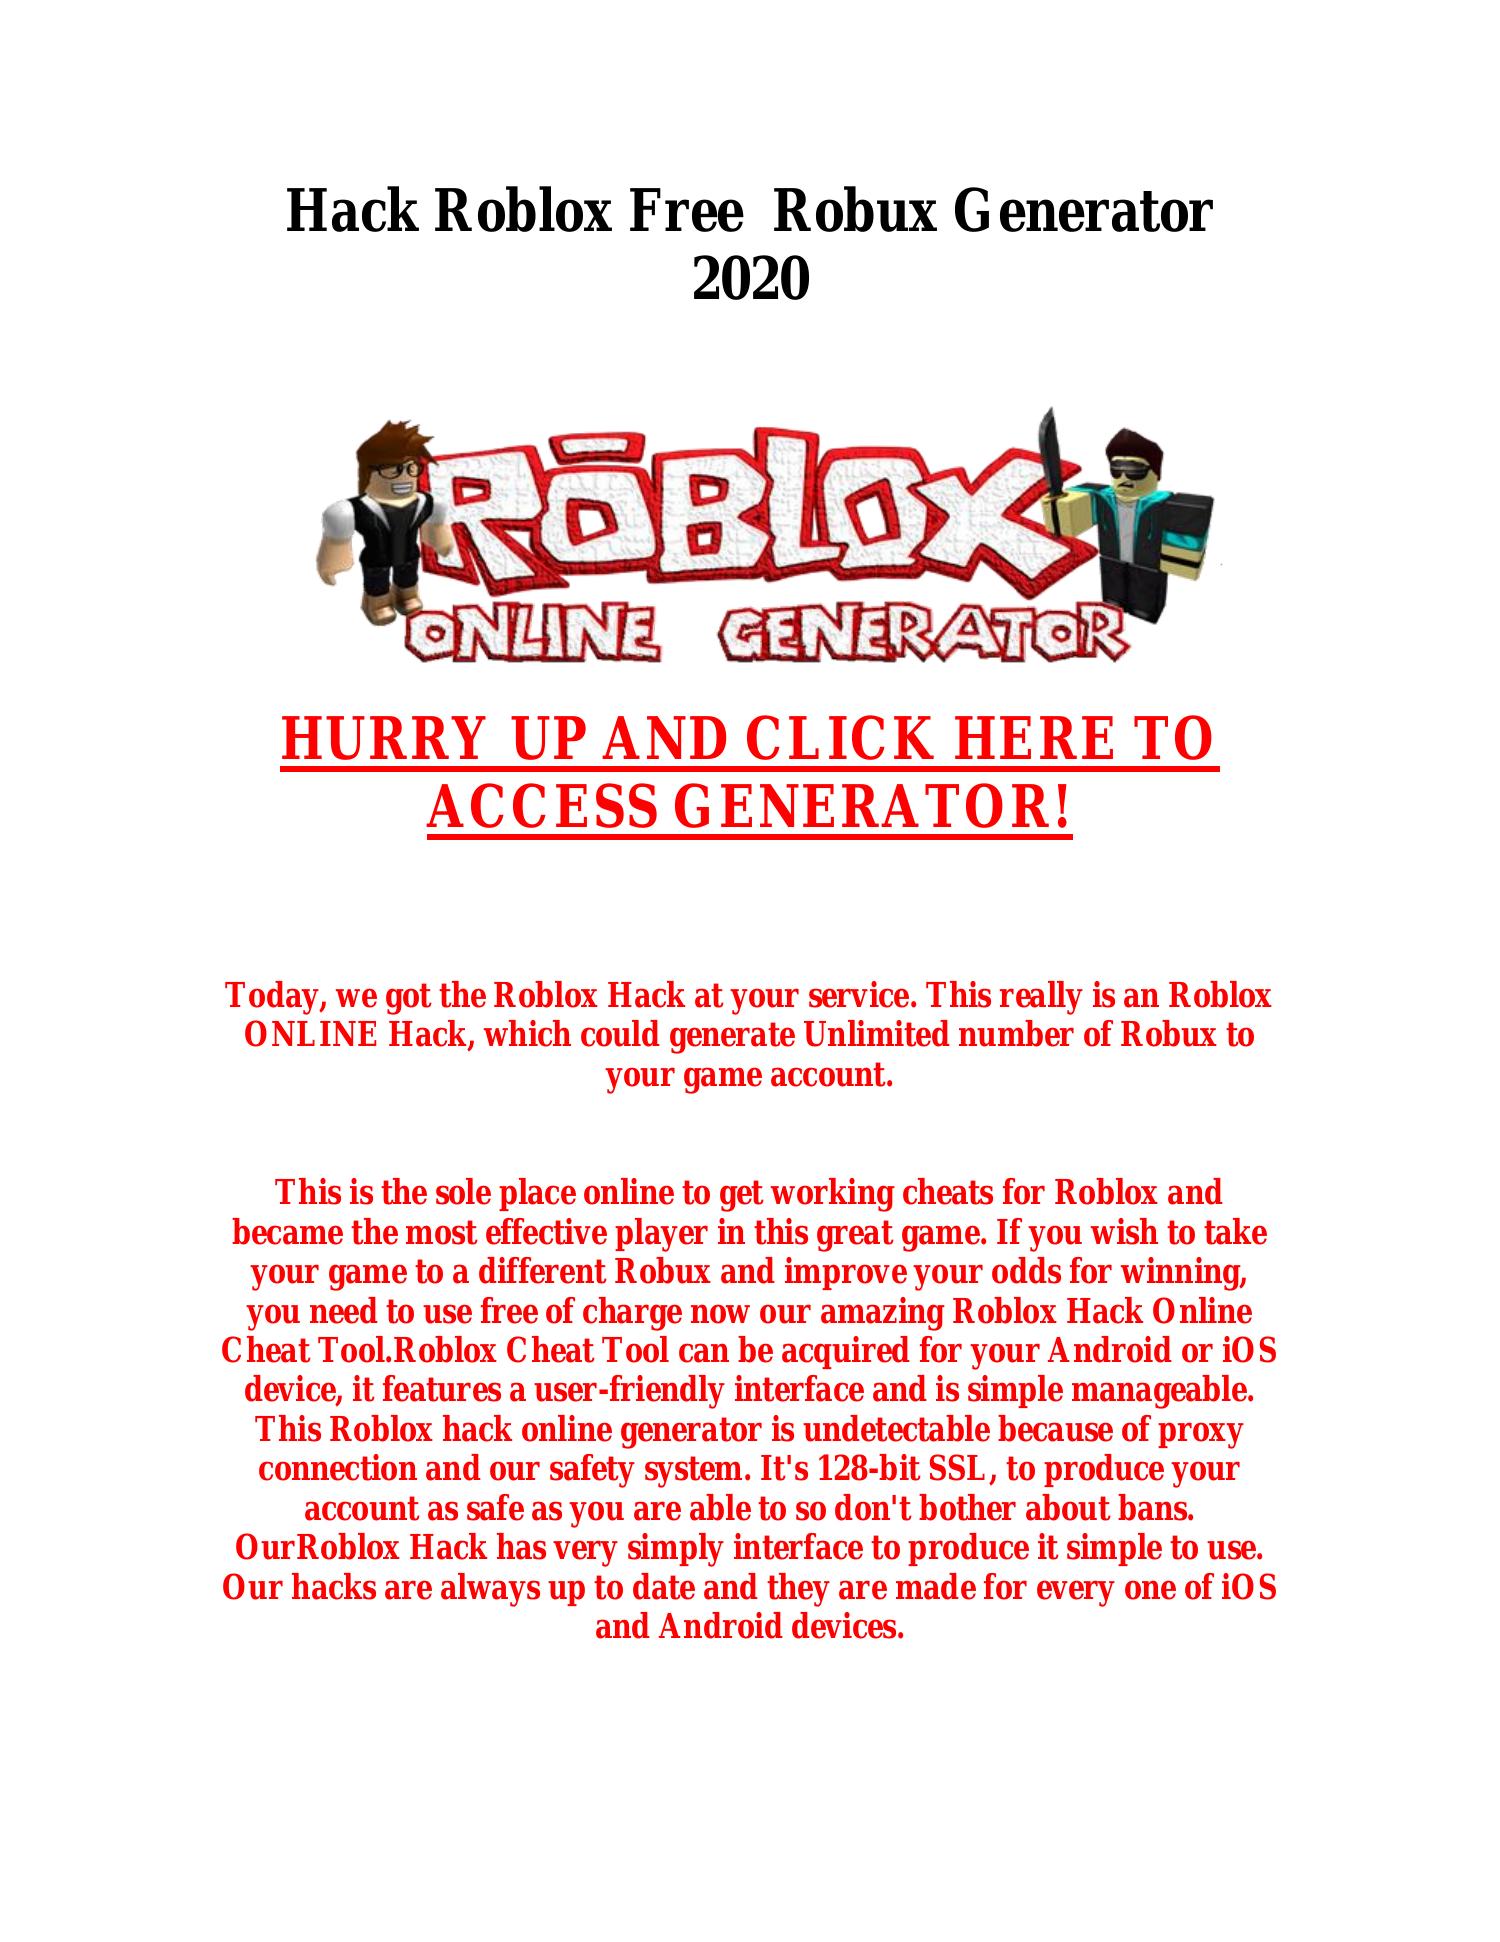 Free Robux Roblox Hacks